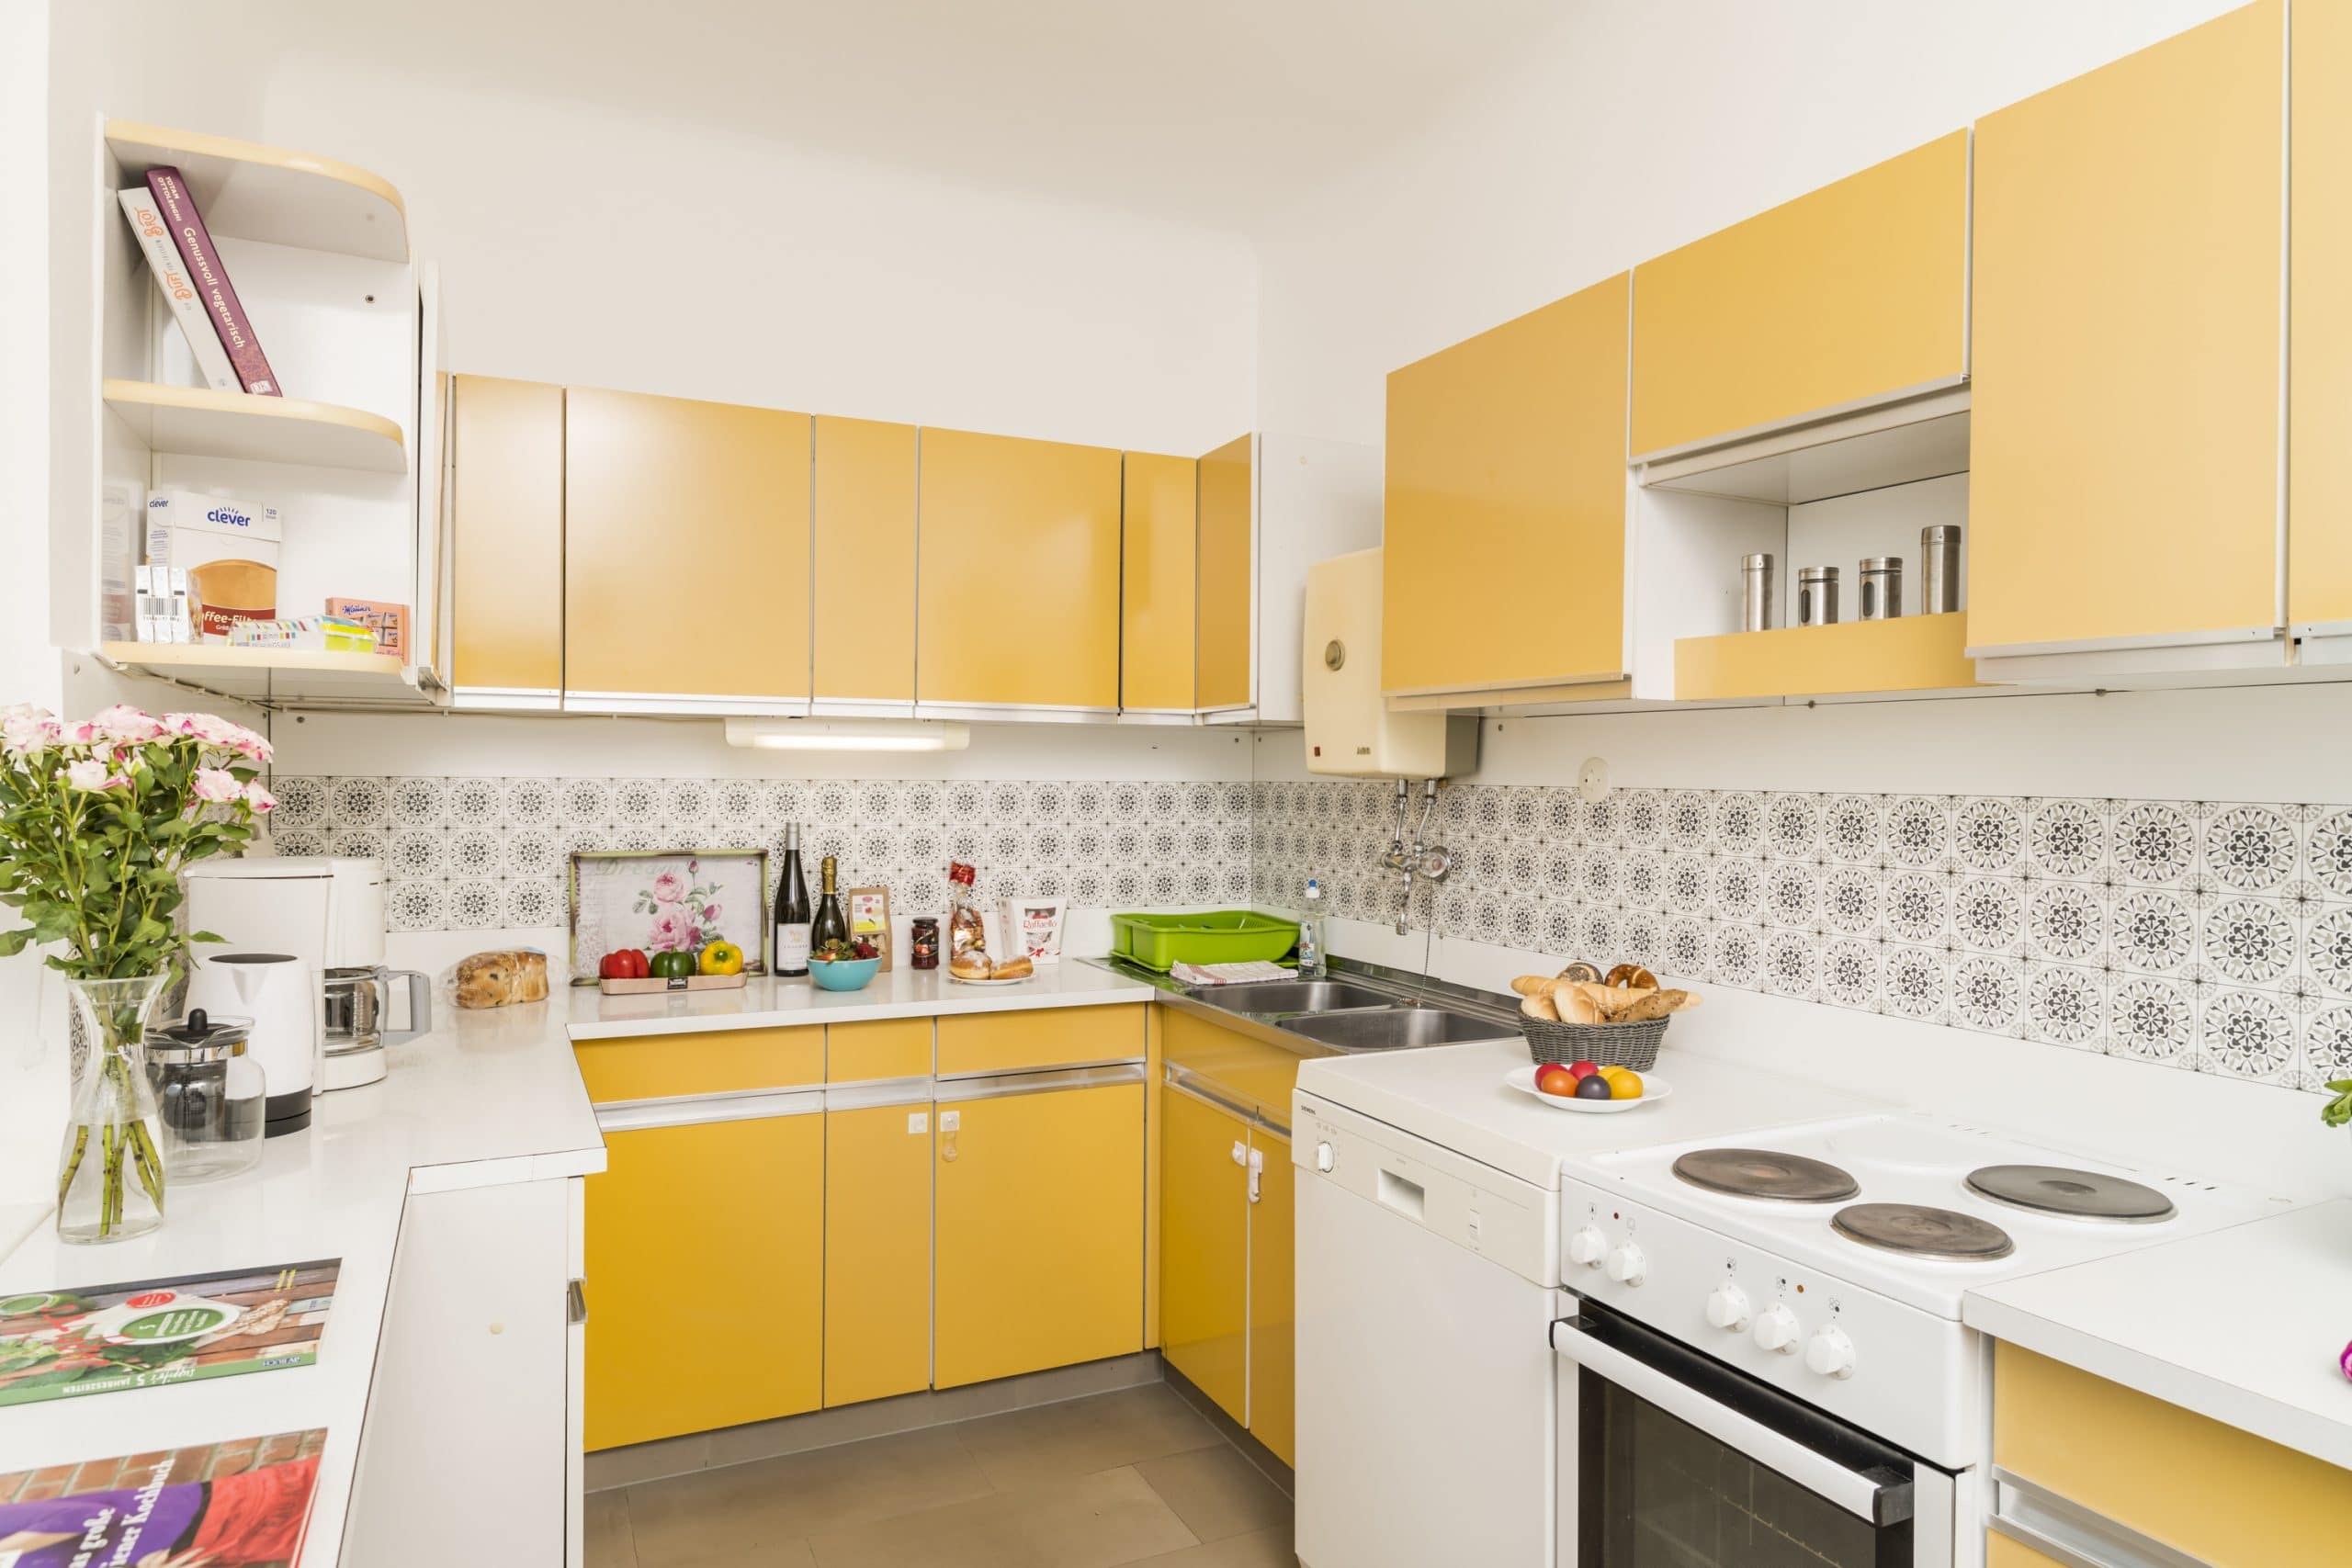 Apartment F21/17 Küche mit Backofen und Geschirrspüler